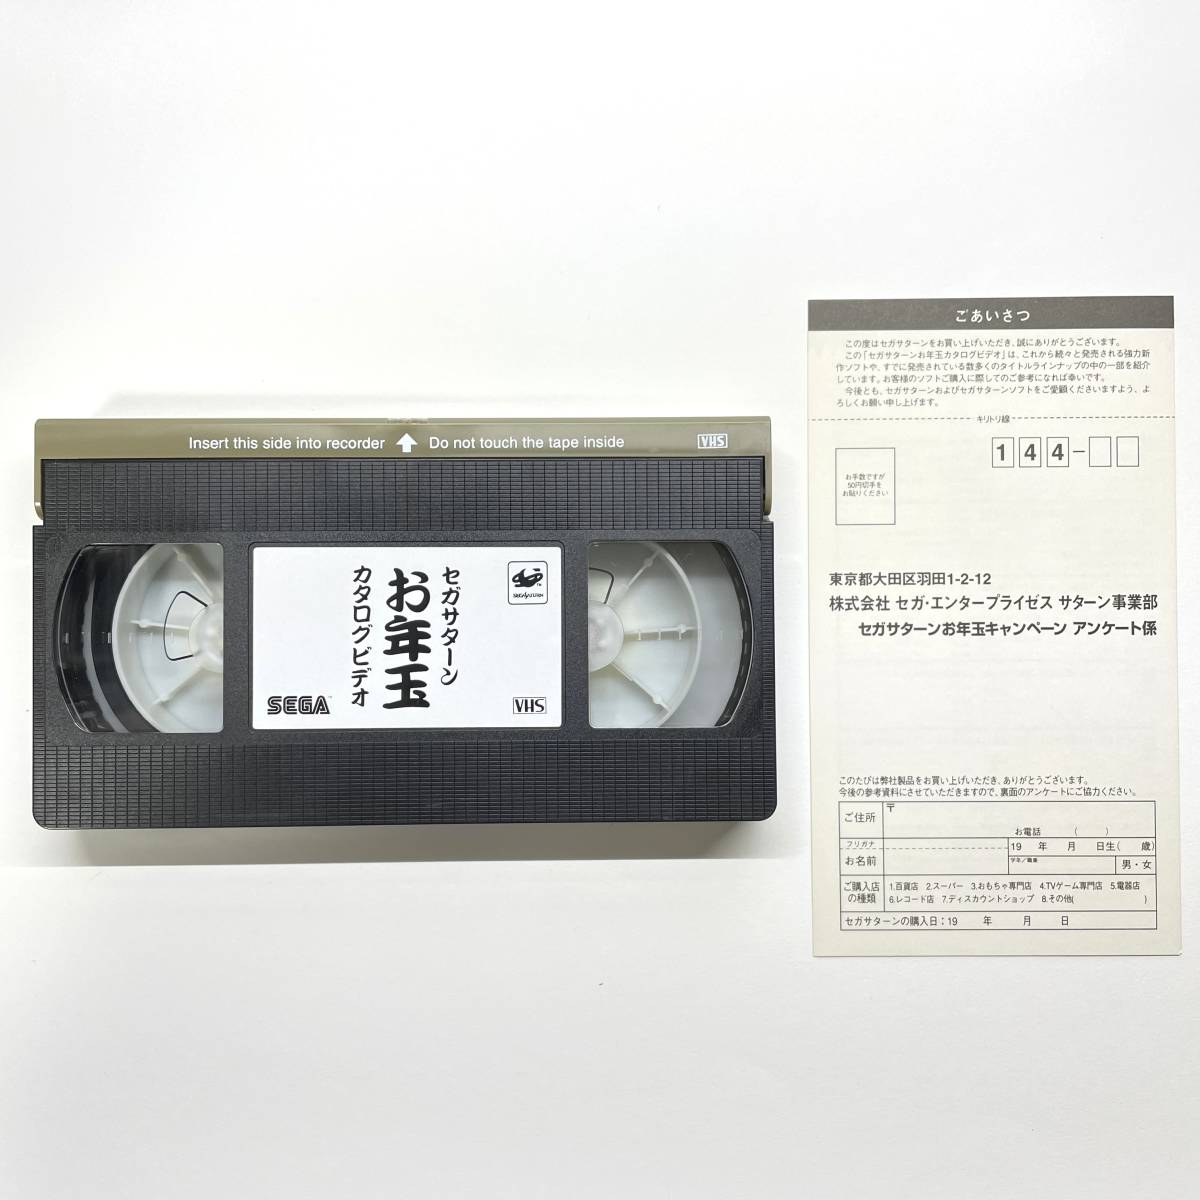 [VHS] Sega Saturn новогодний подарок каталог видео ( не продается видеолента / SEGA)